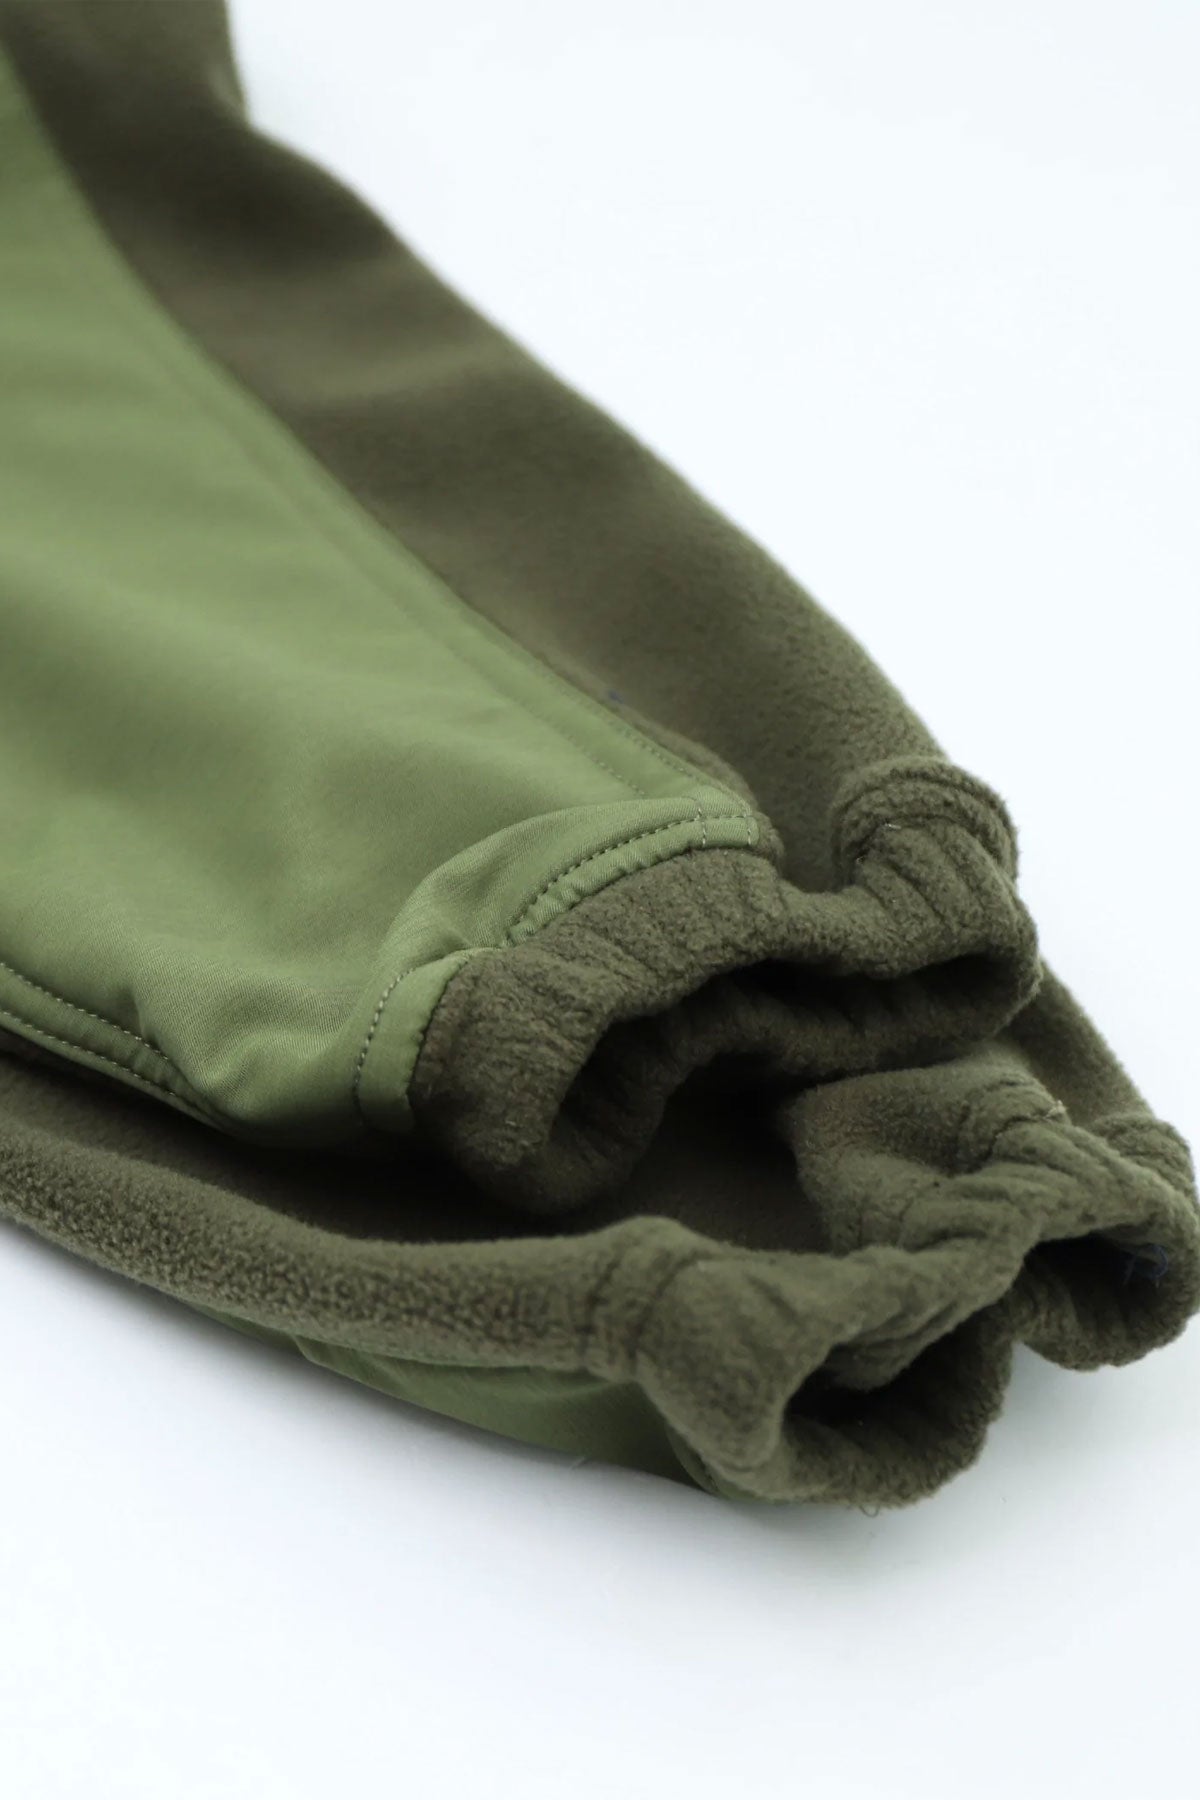 Workware - Field Setup (Fleece + cropped vest) in Green